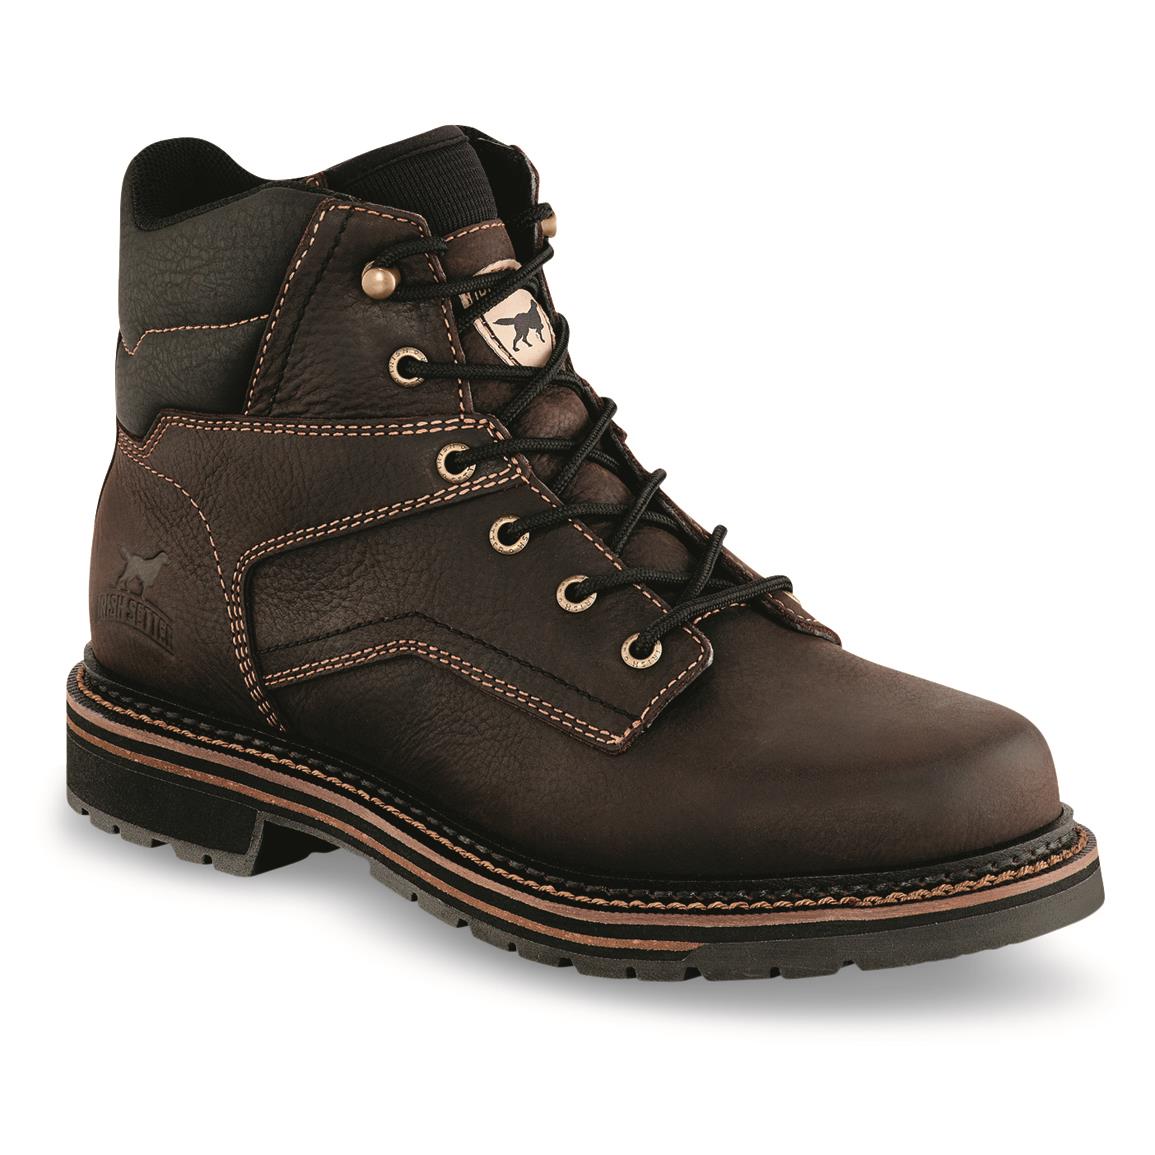 Irish Setter Men's Kittson Steel Toe Work Boots, Brown